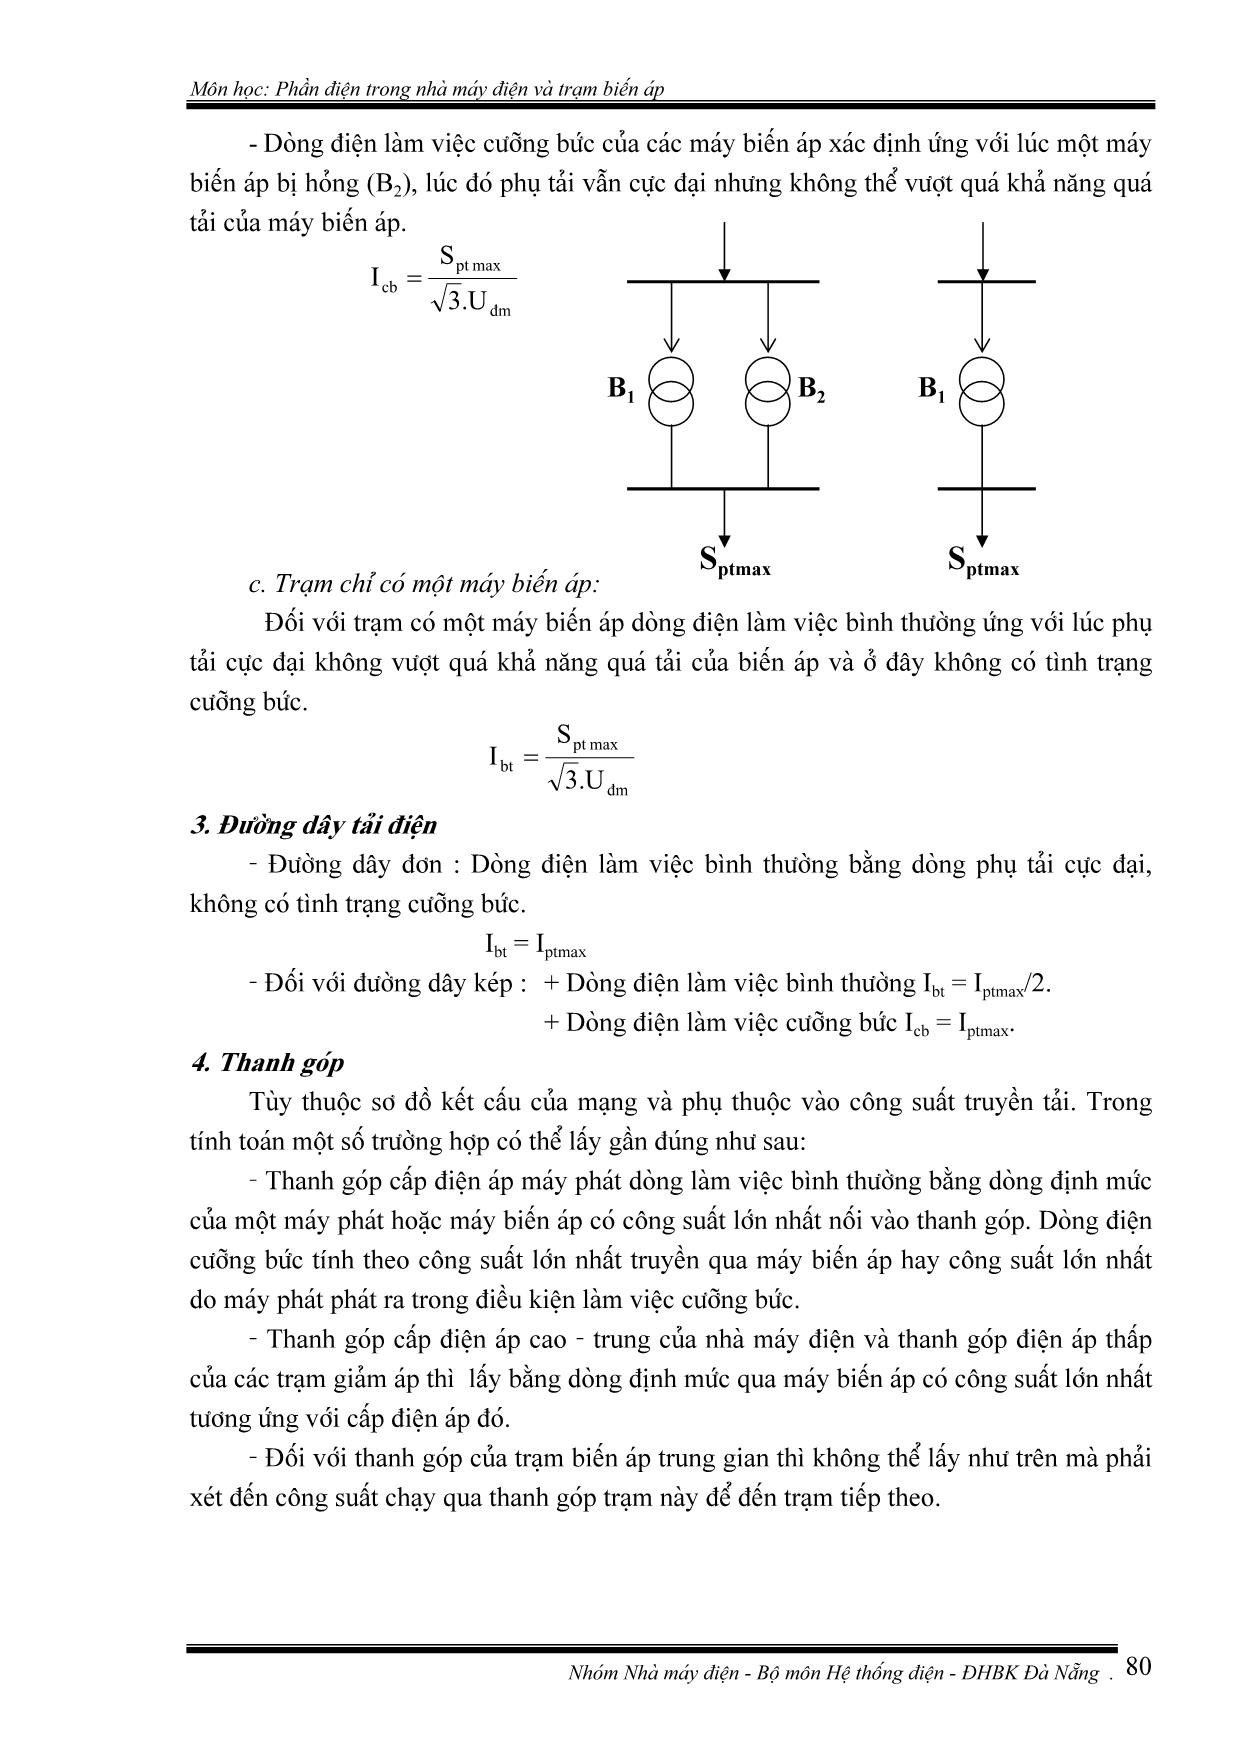 Giáo trình Phần điện trong nhà máy điện và trạm biến áp (Phần 2) trang 2